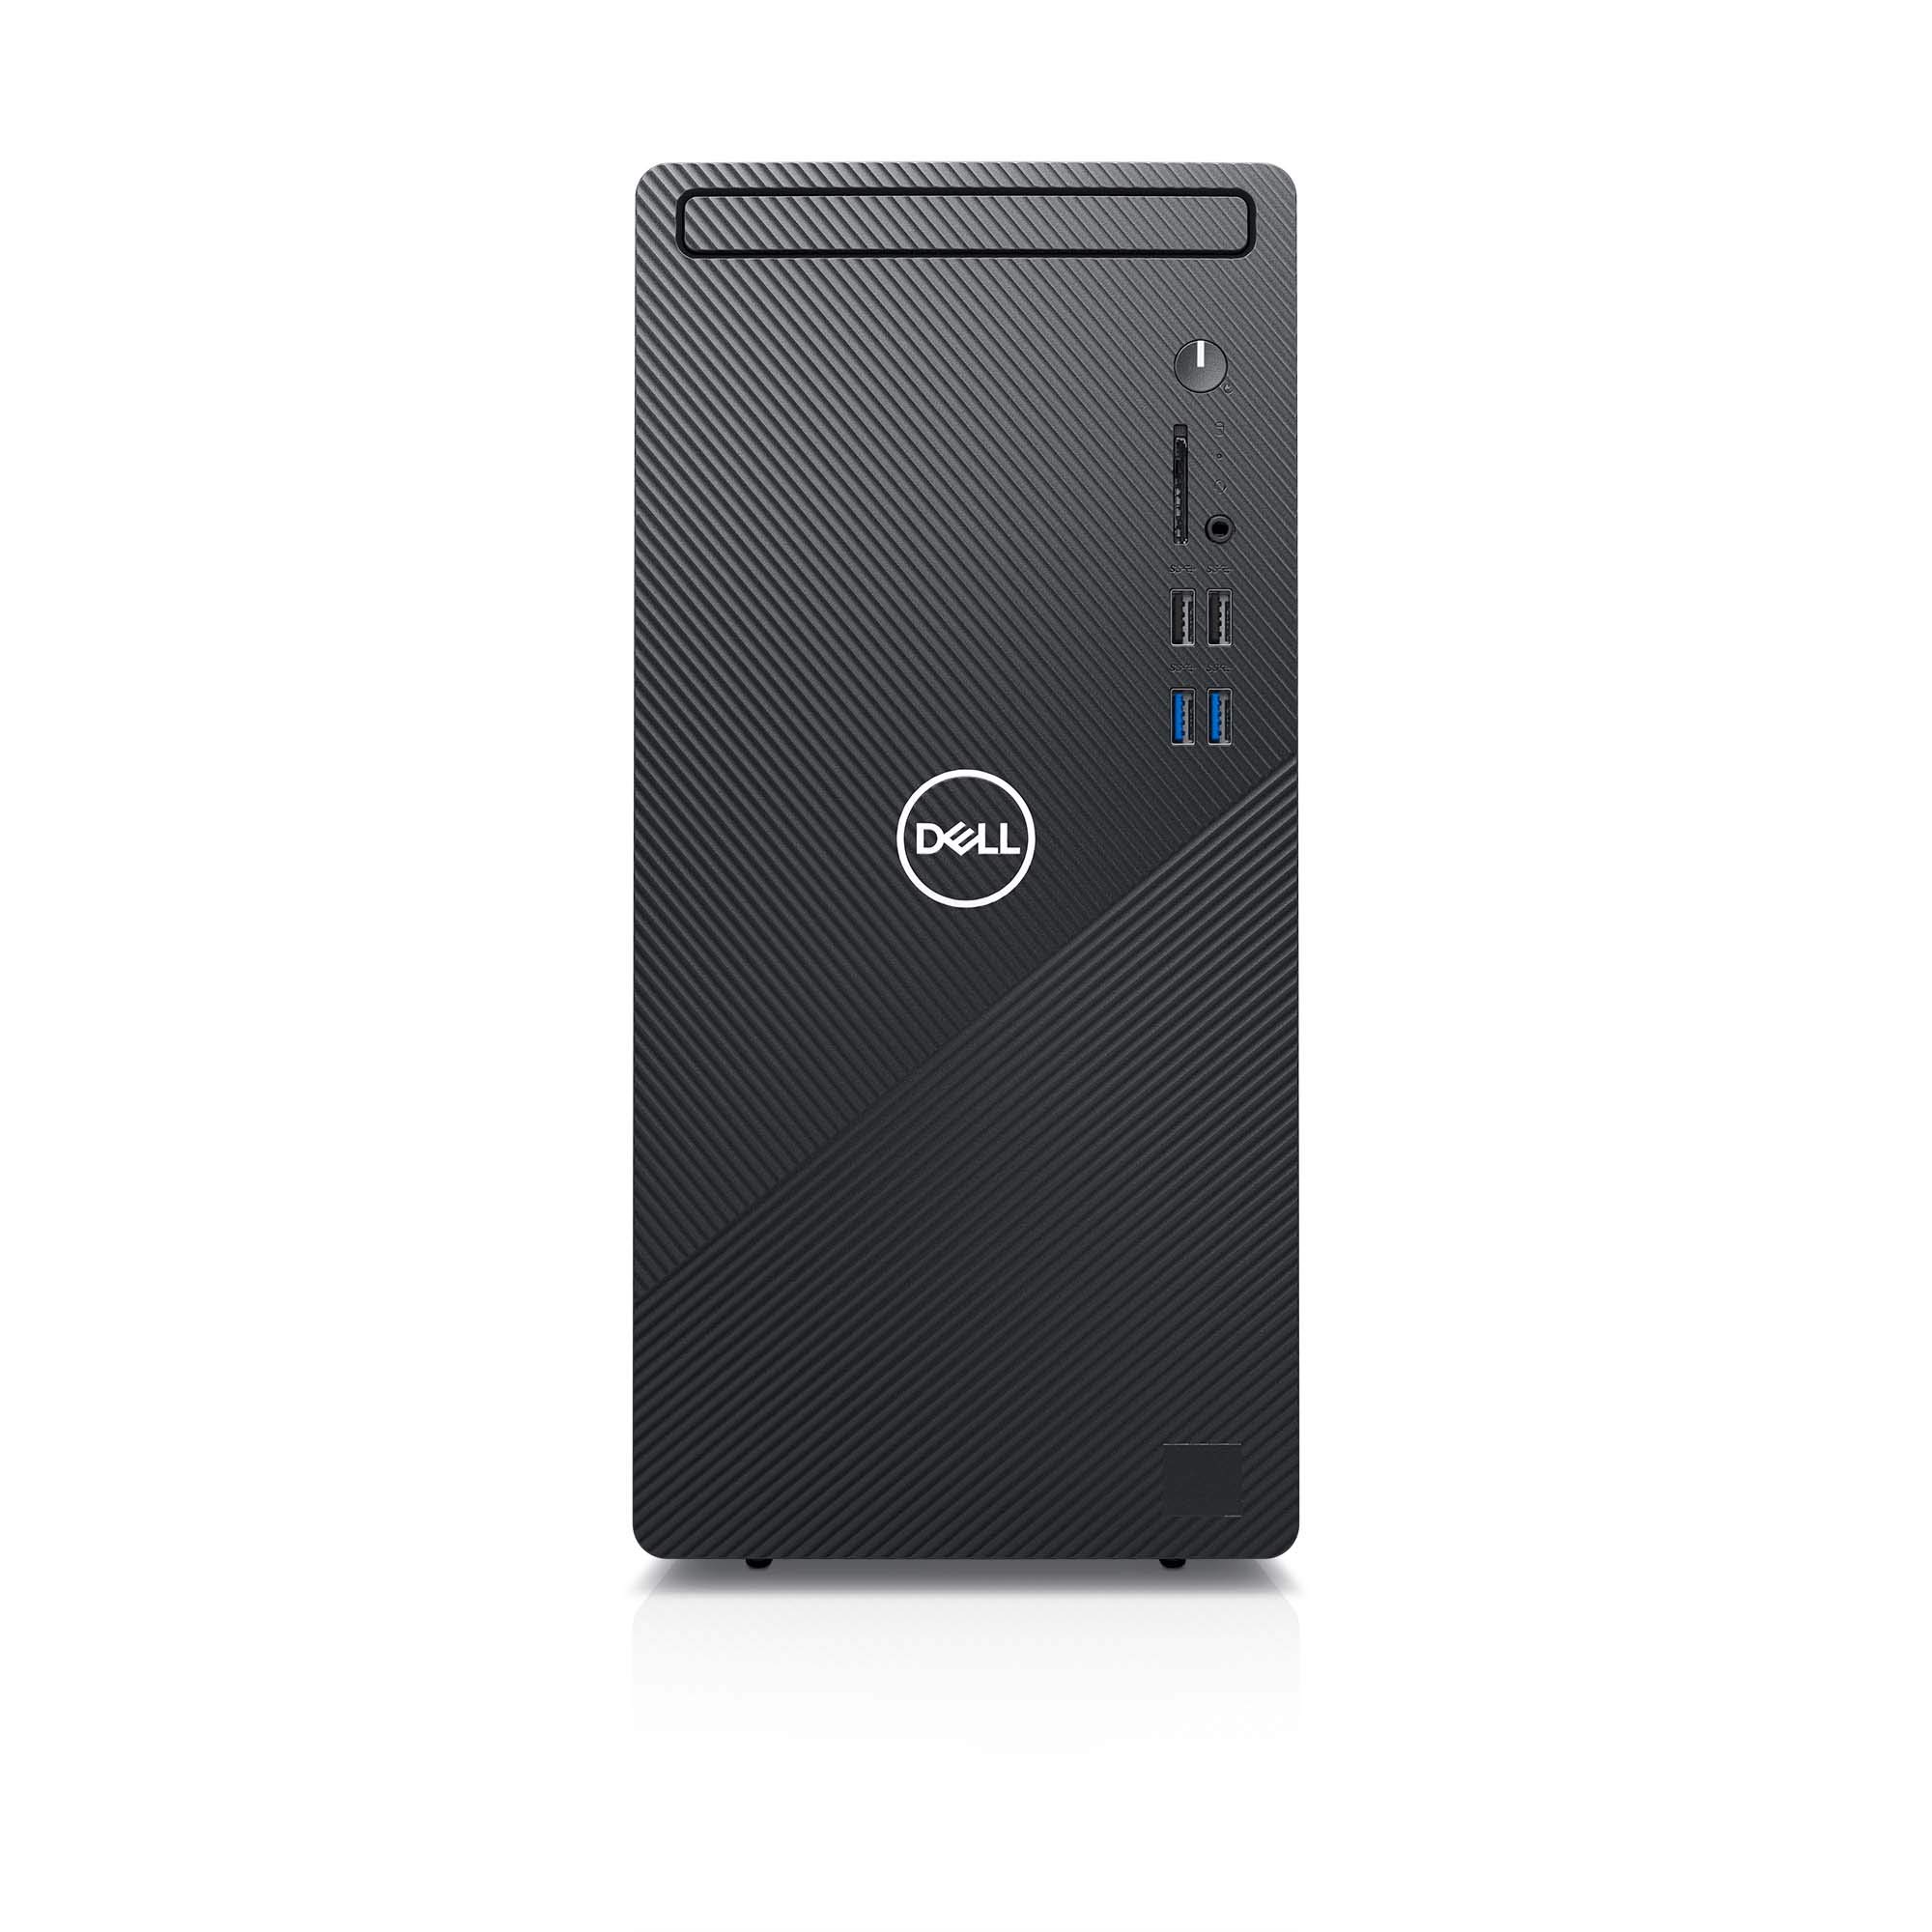 Dell Inspiron Desktop 3880 - Intel Core i7 10th Gen, 8GB Memory, 512GB Solid State Drive, Windows 10 Home (Latest Model) - Black (i3880-7975BLK-PUS)